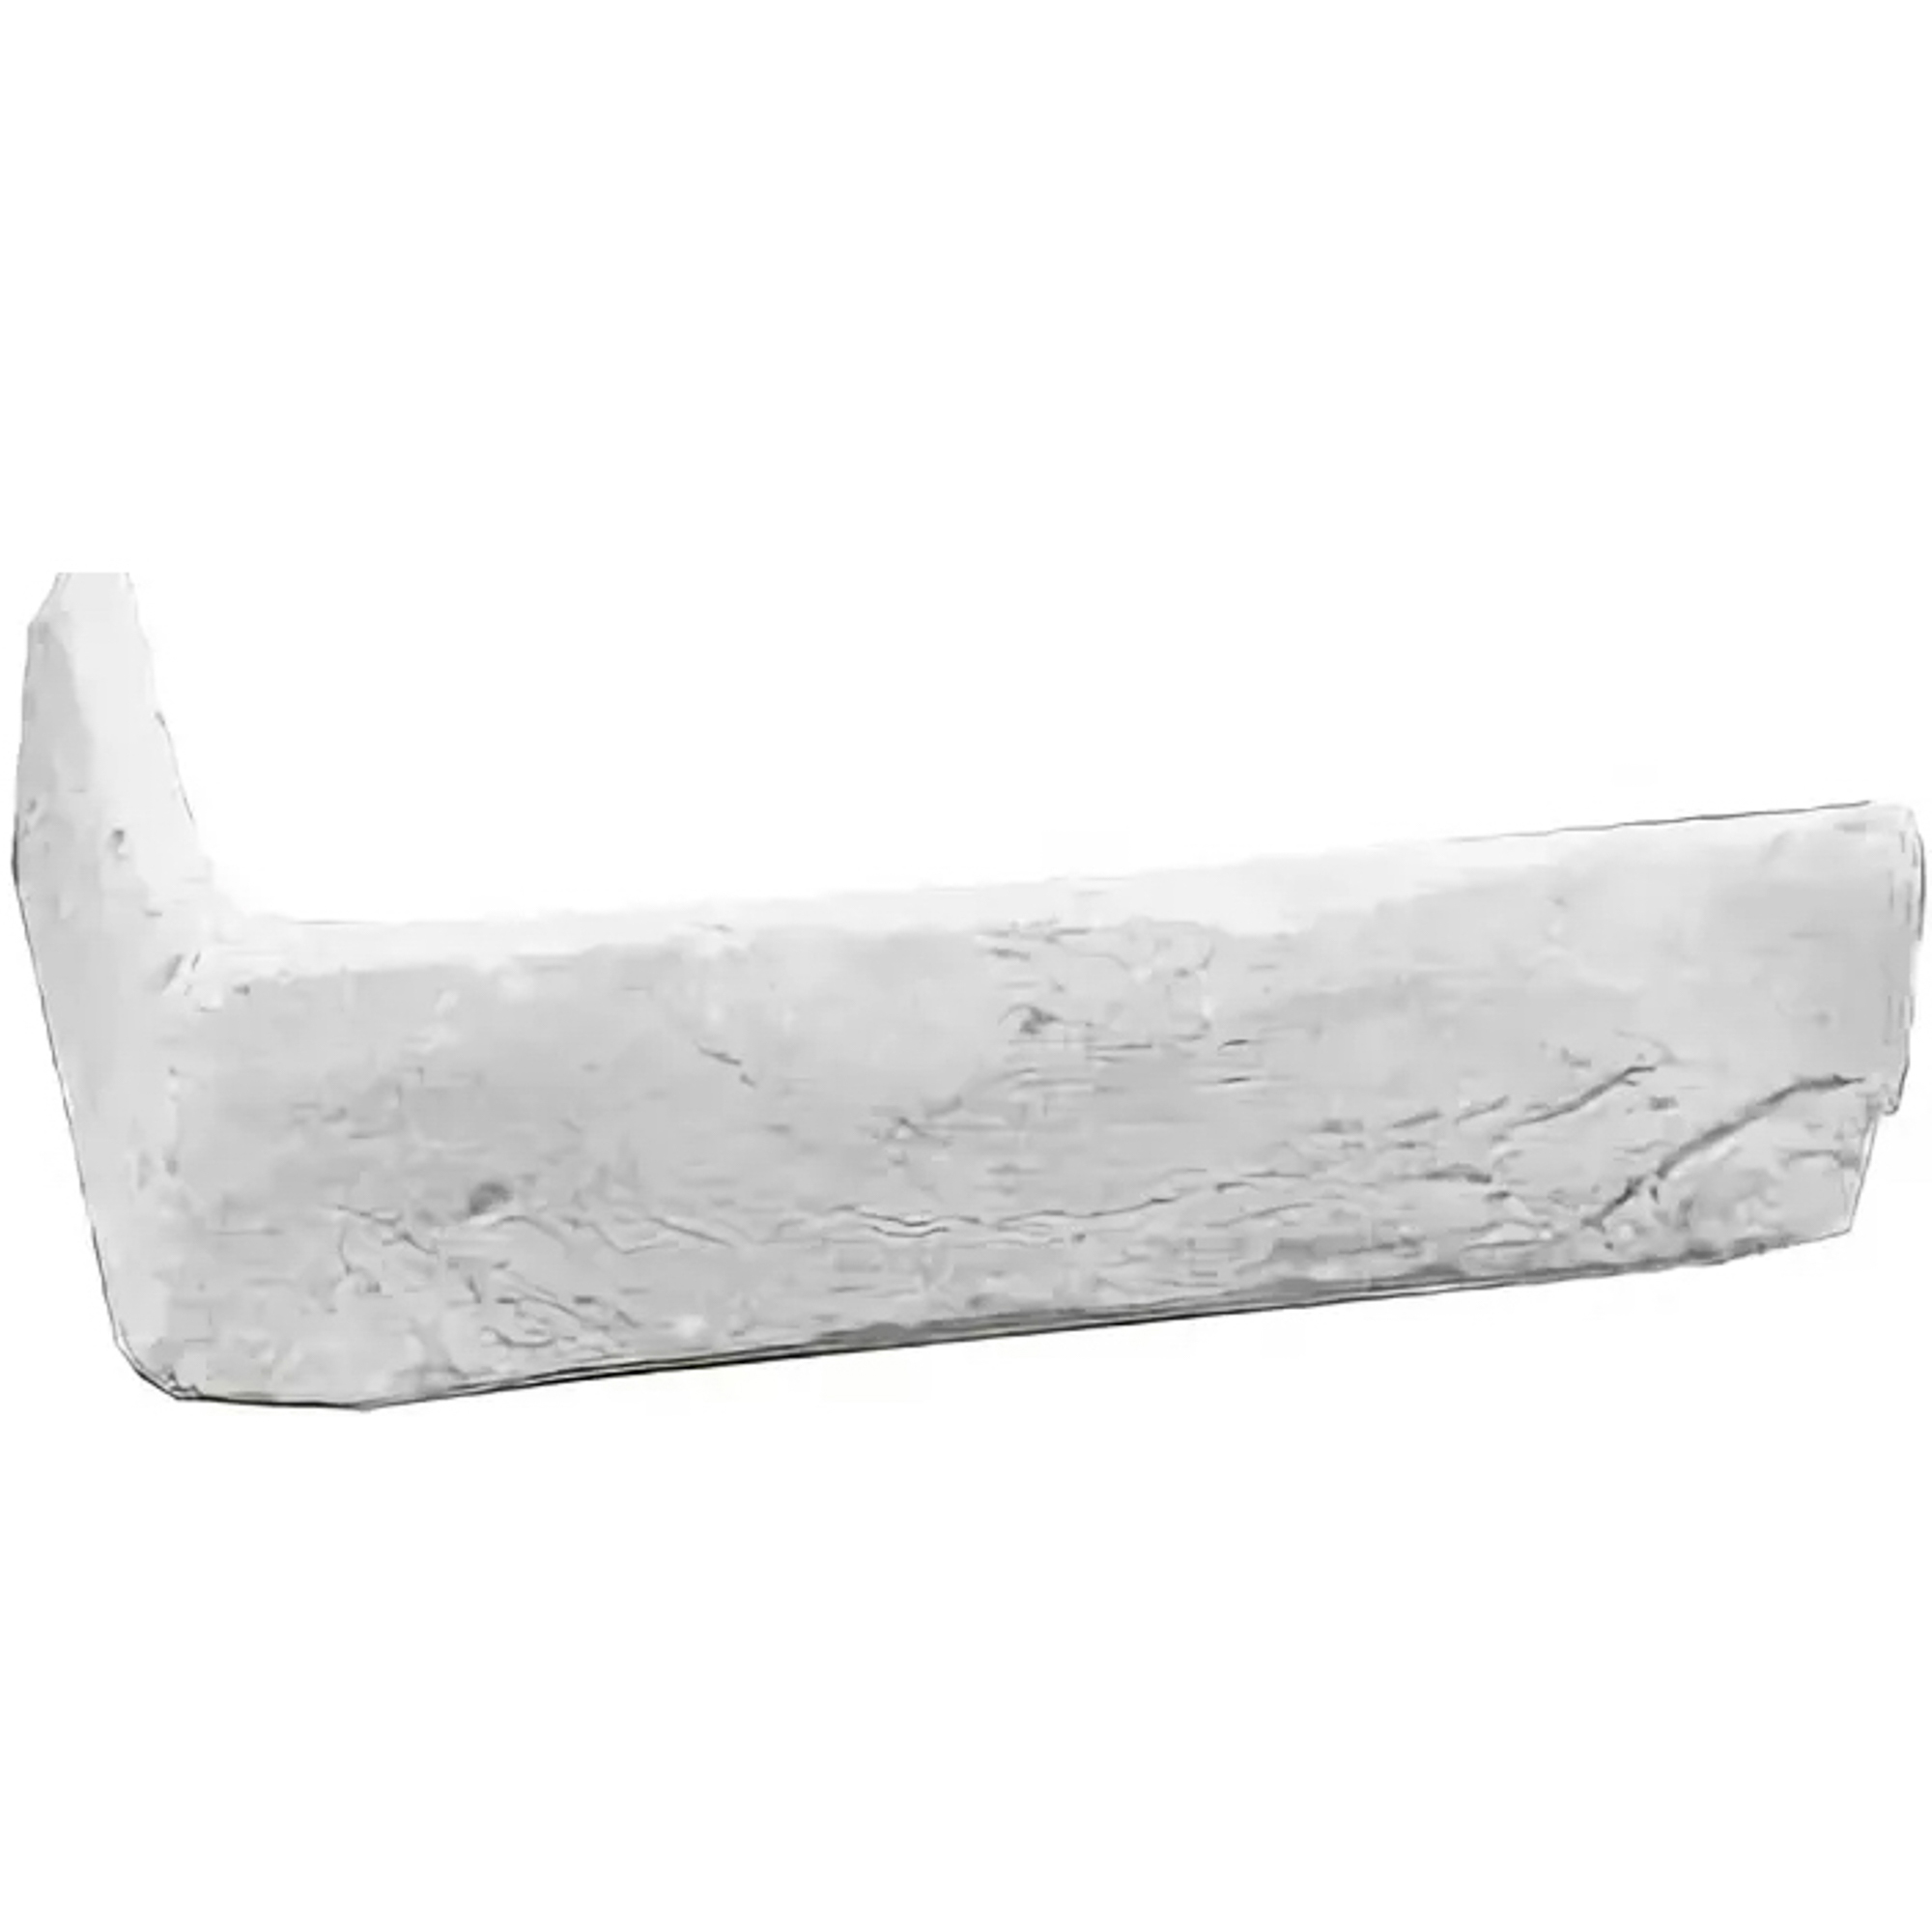 угловой элемент керамика белый 25x13 см Угловой элемент Керамика белый 25x13 см